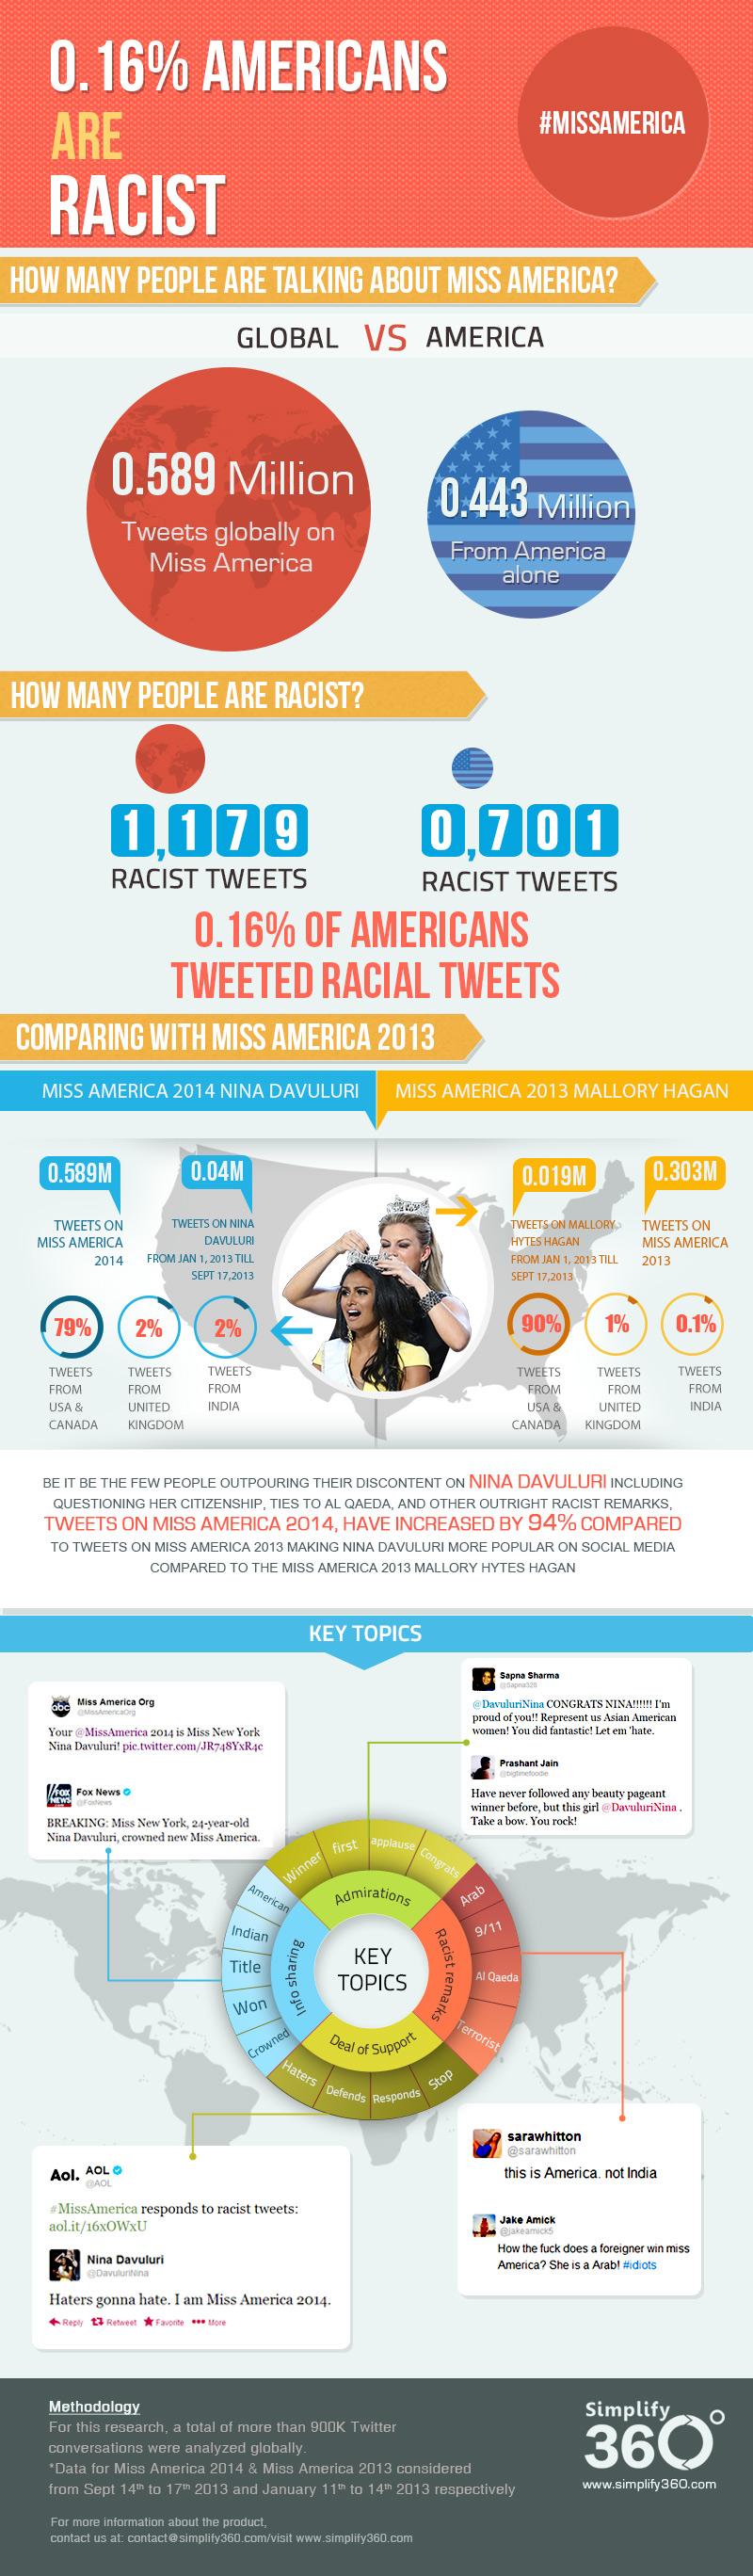 El 0,16% de los americanos son racistas #Infografía #Racismo #Americanos #MissAmerica